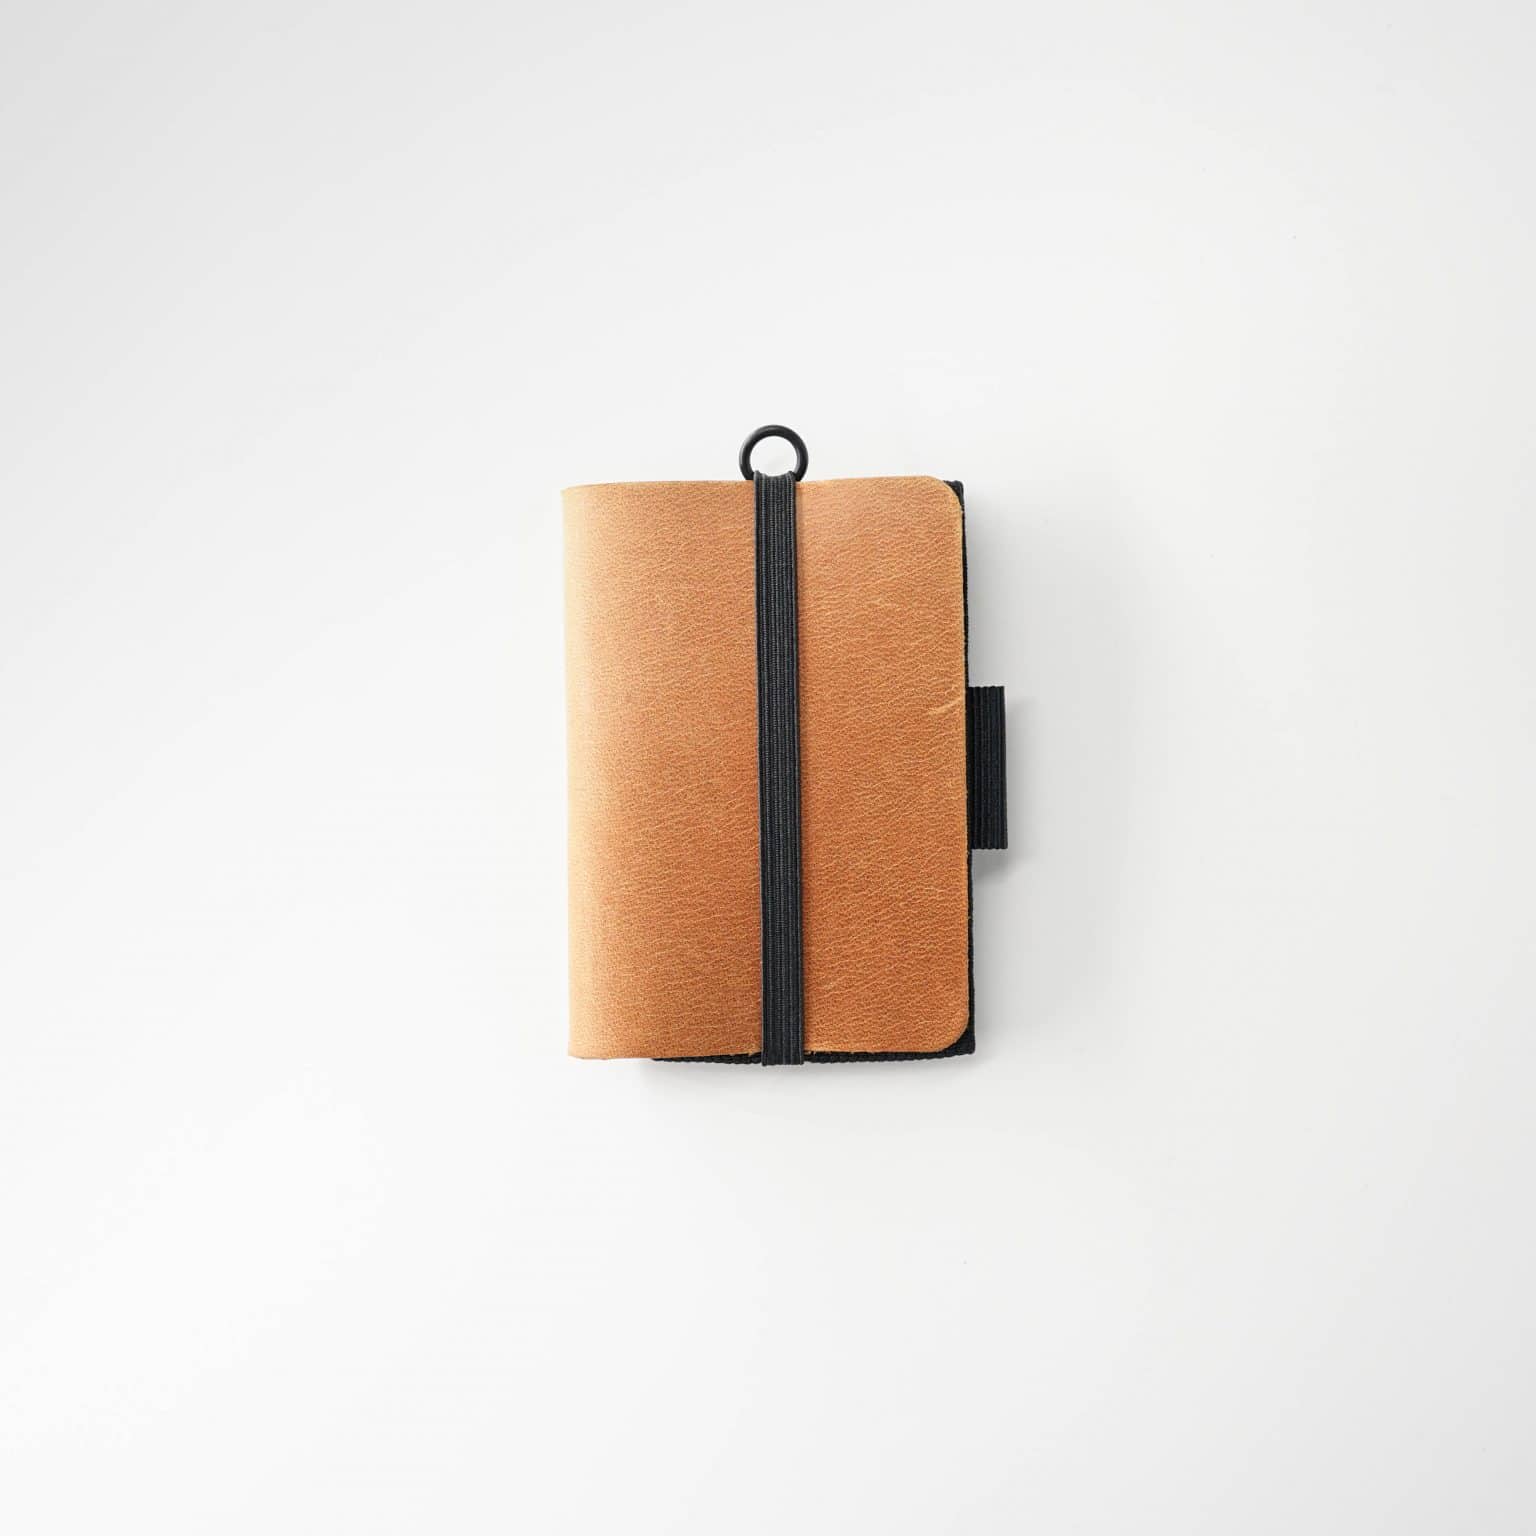 Minimalist portefeuille en cuir avec un design innovant à tirette.